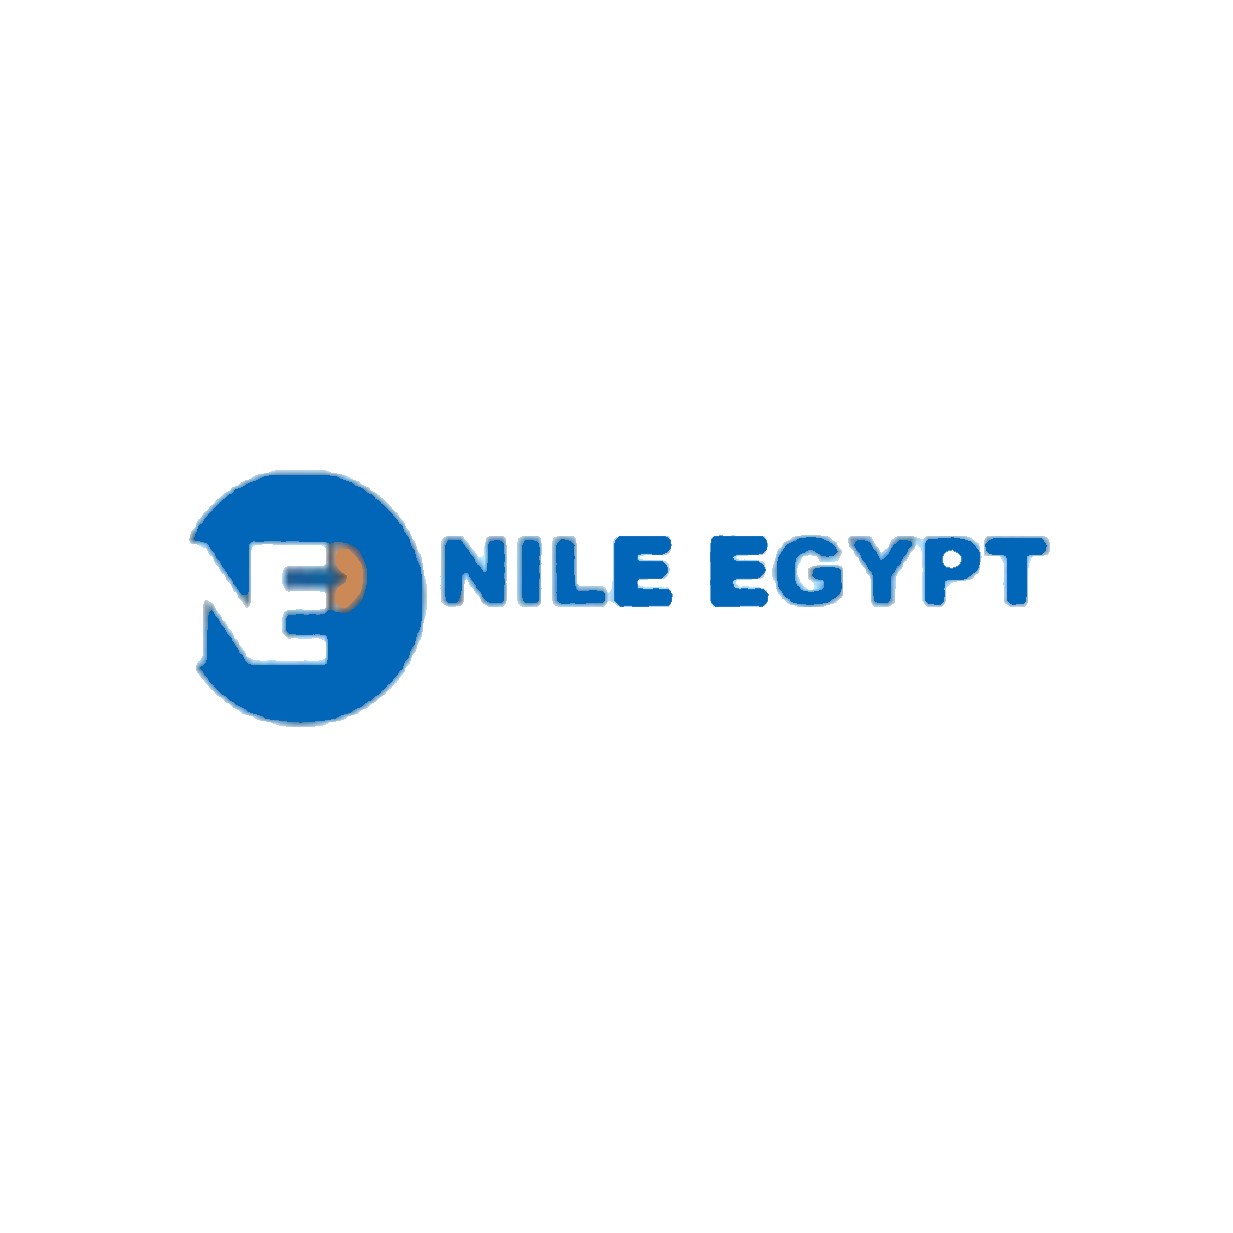 Nile Egypt plastech